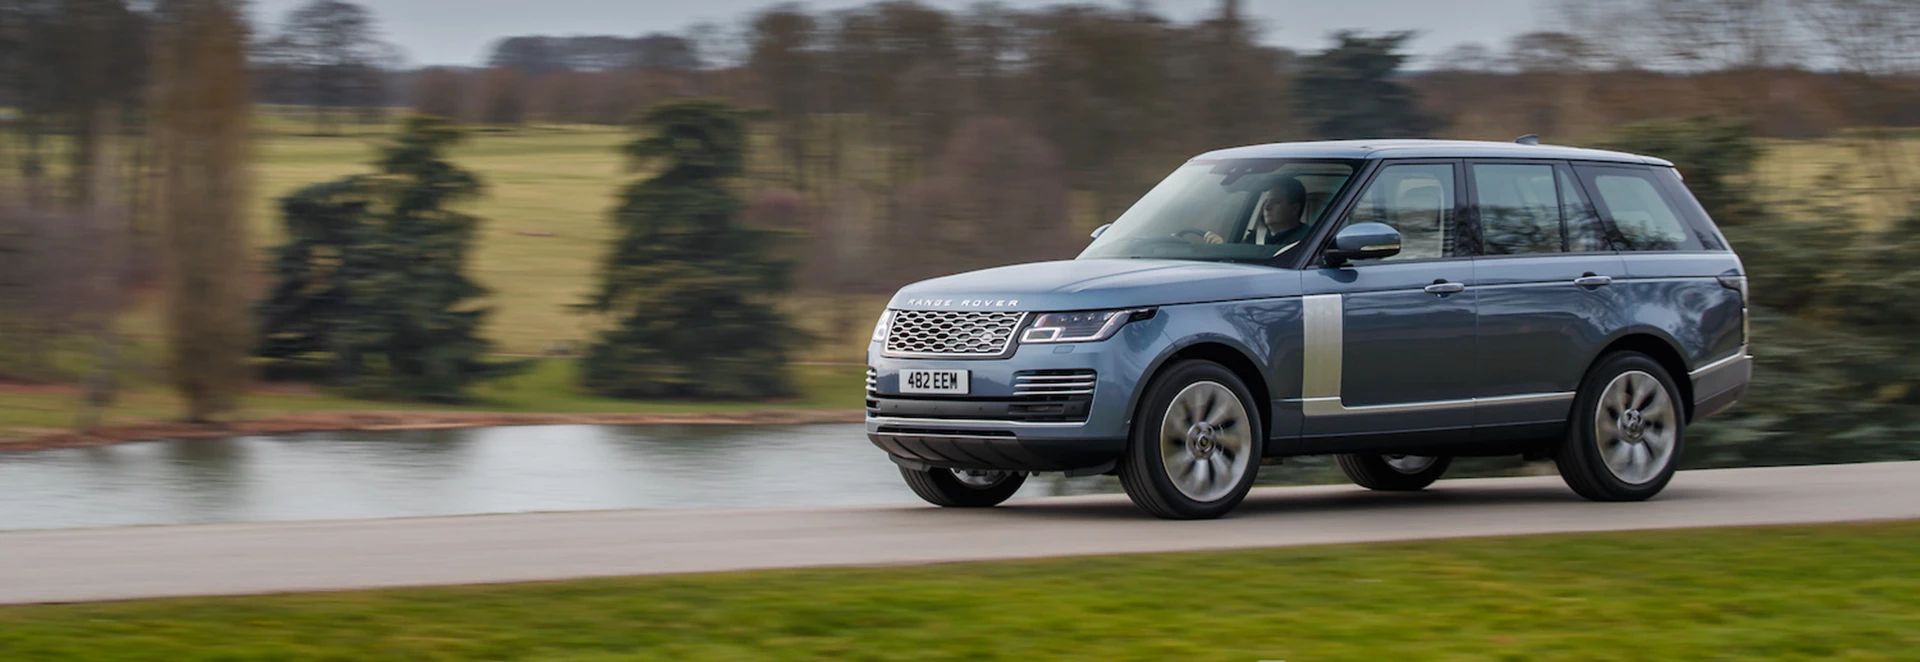 Range Rover SDV8 2019 review